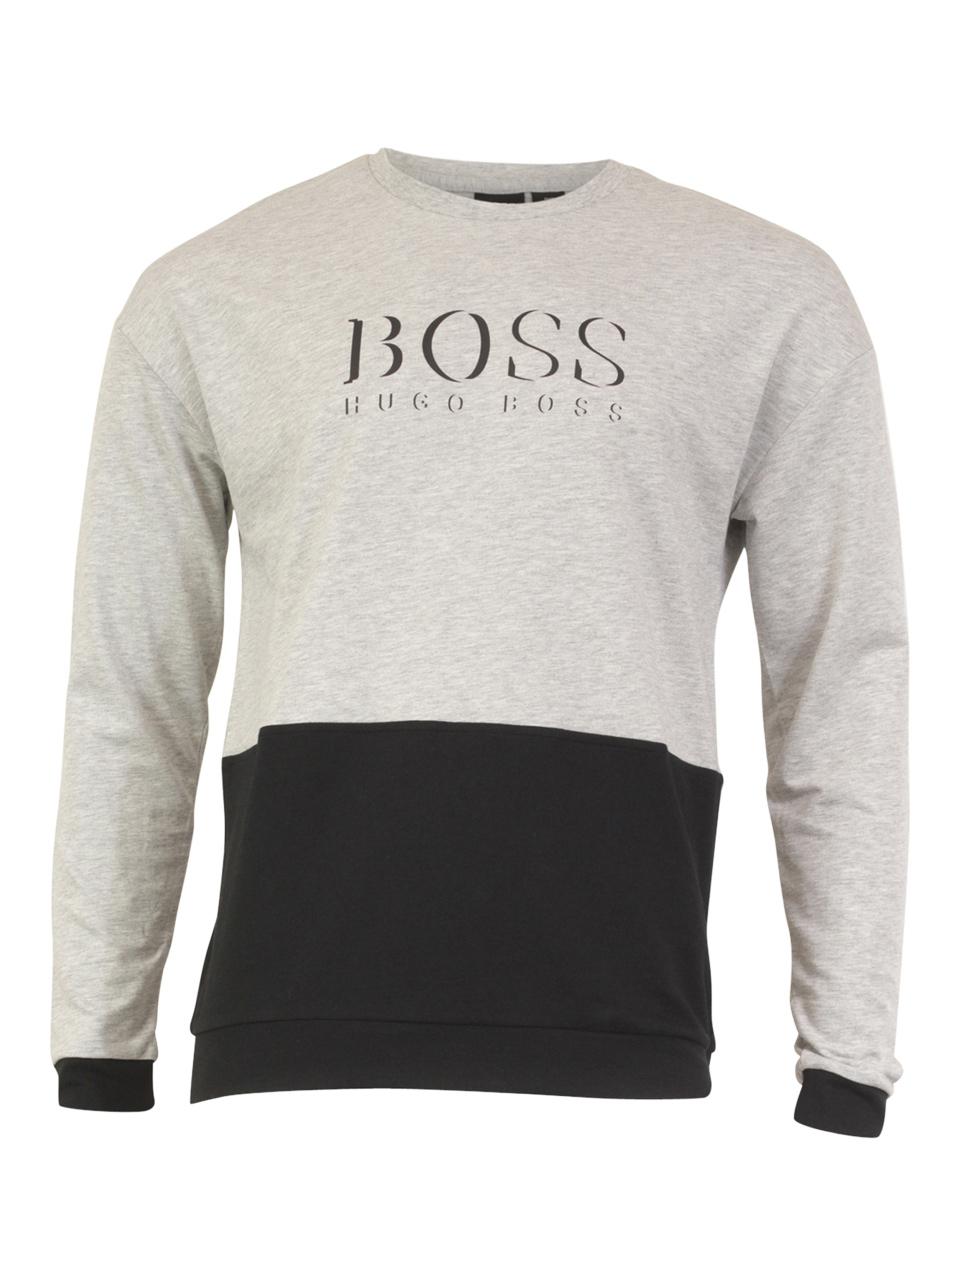 hugo boss men's sweatshirts